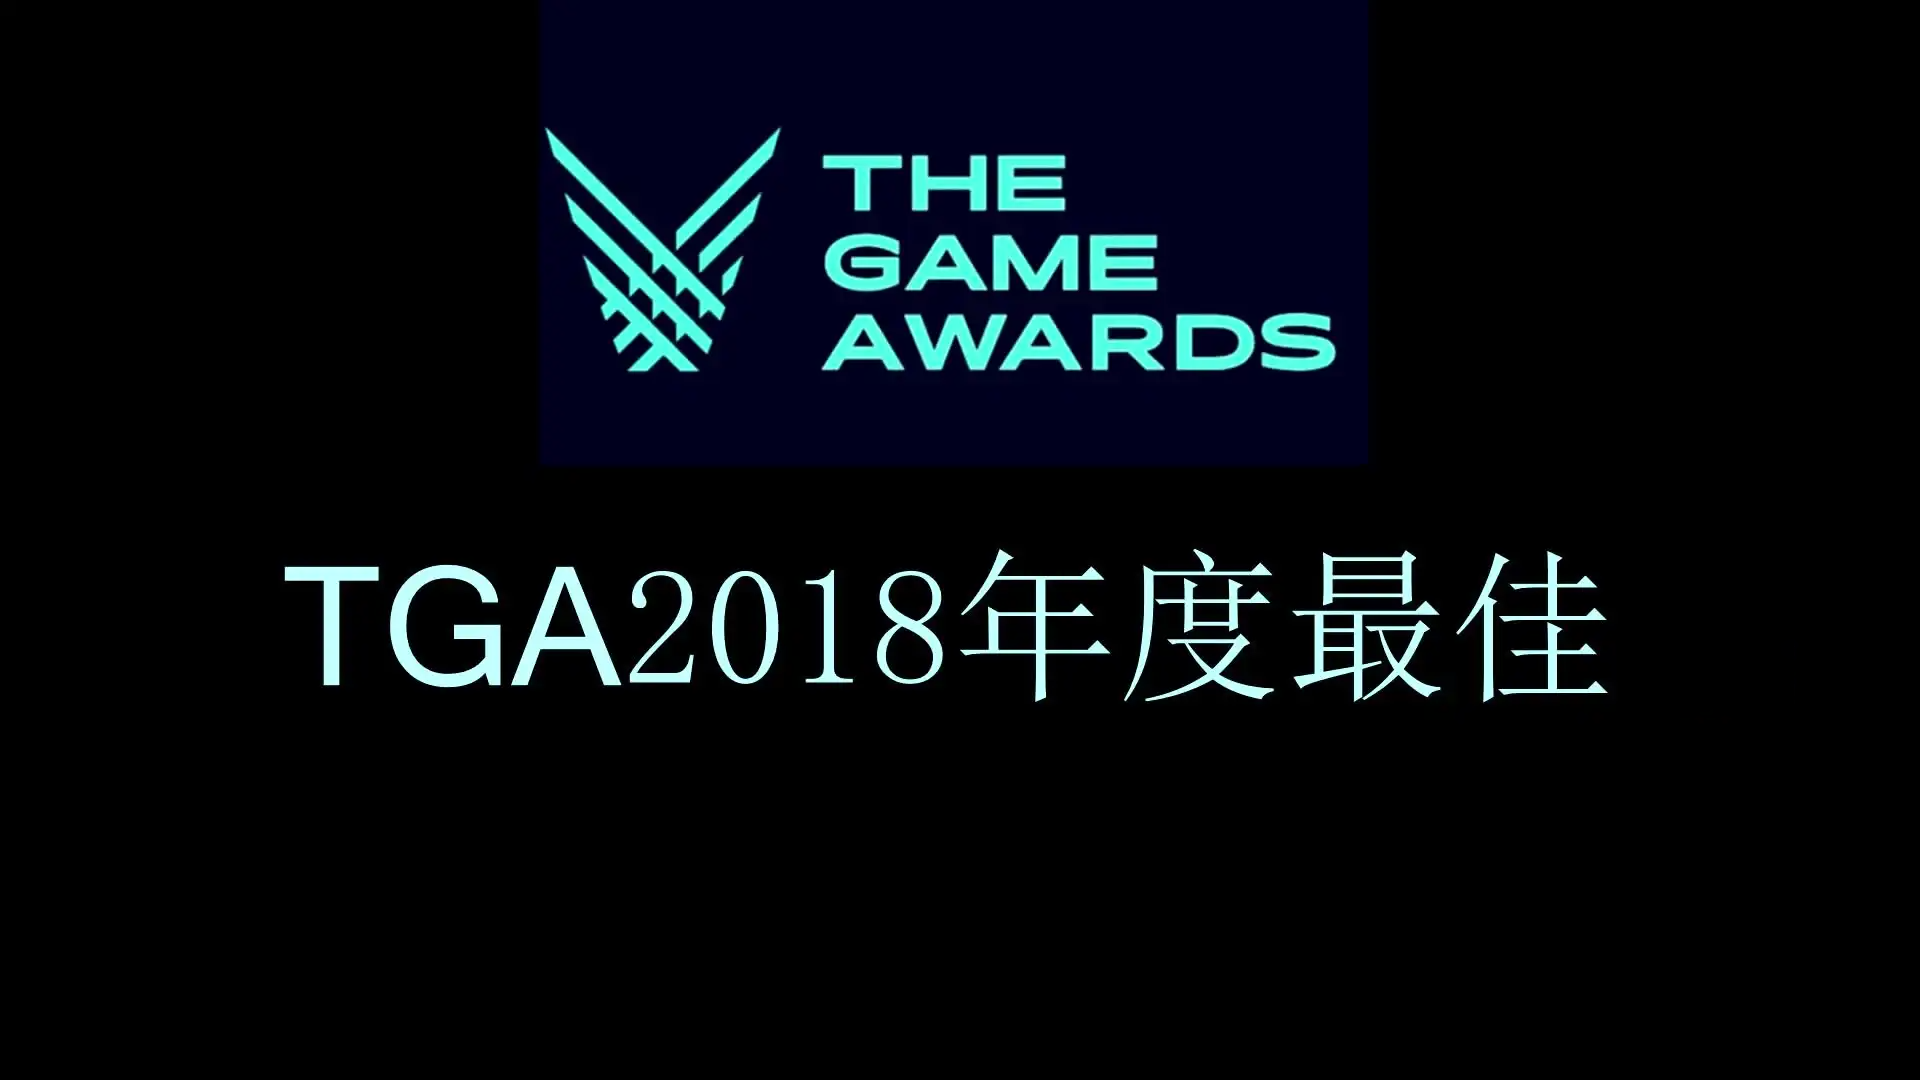 TGA获奖名单2018 《守望先锋》获年度最佳年度电竞游戏